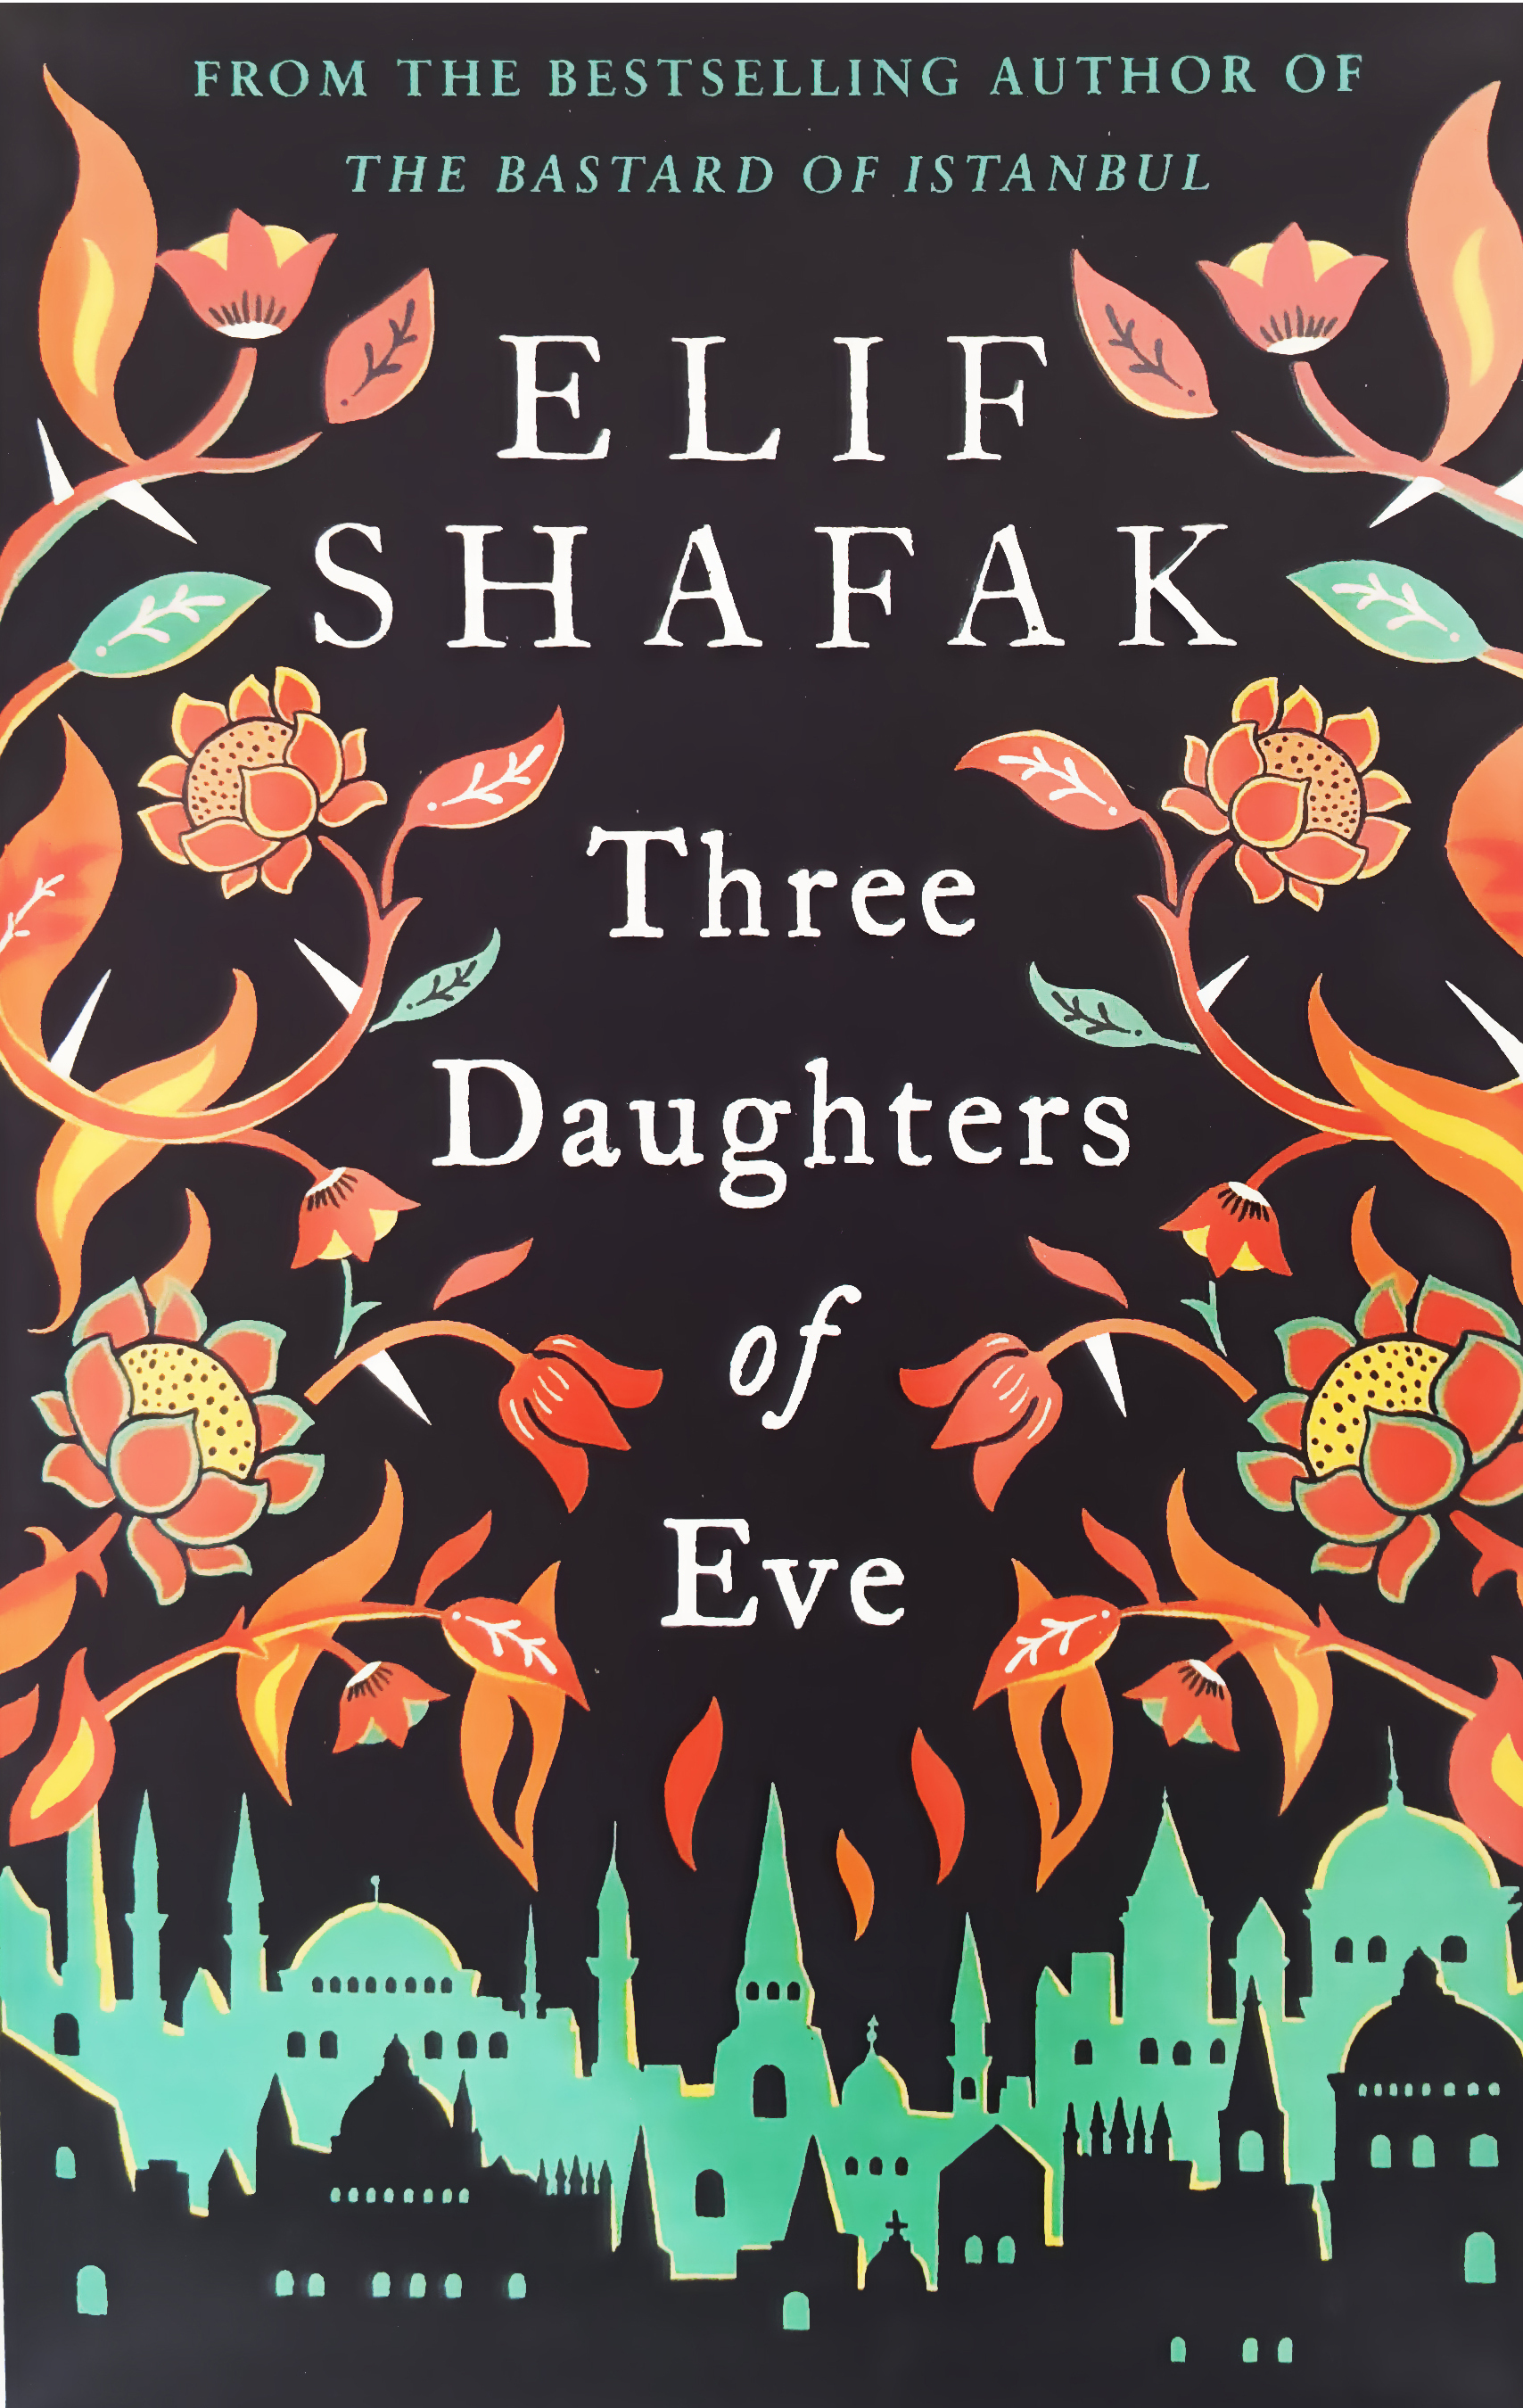 The daughters of eve. Стамбульский бастард Элиф Шафак книга. Стамбульский бастард книга. Three daughters of Eve.